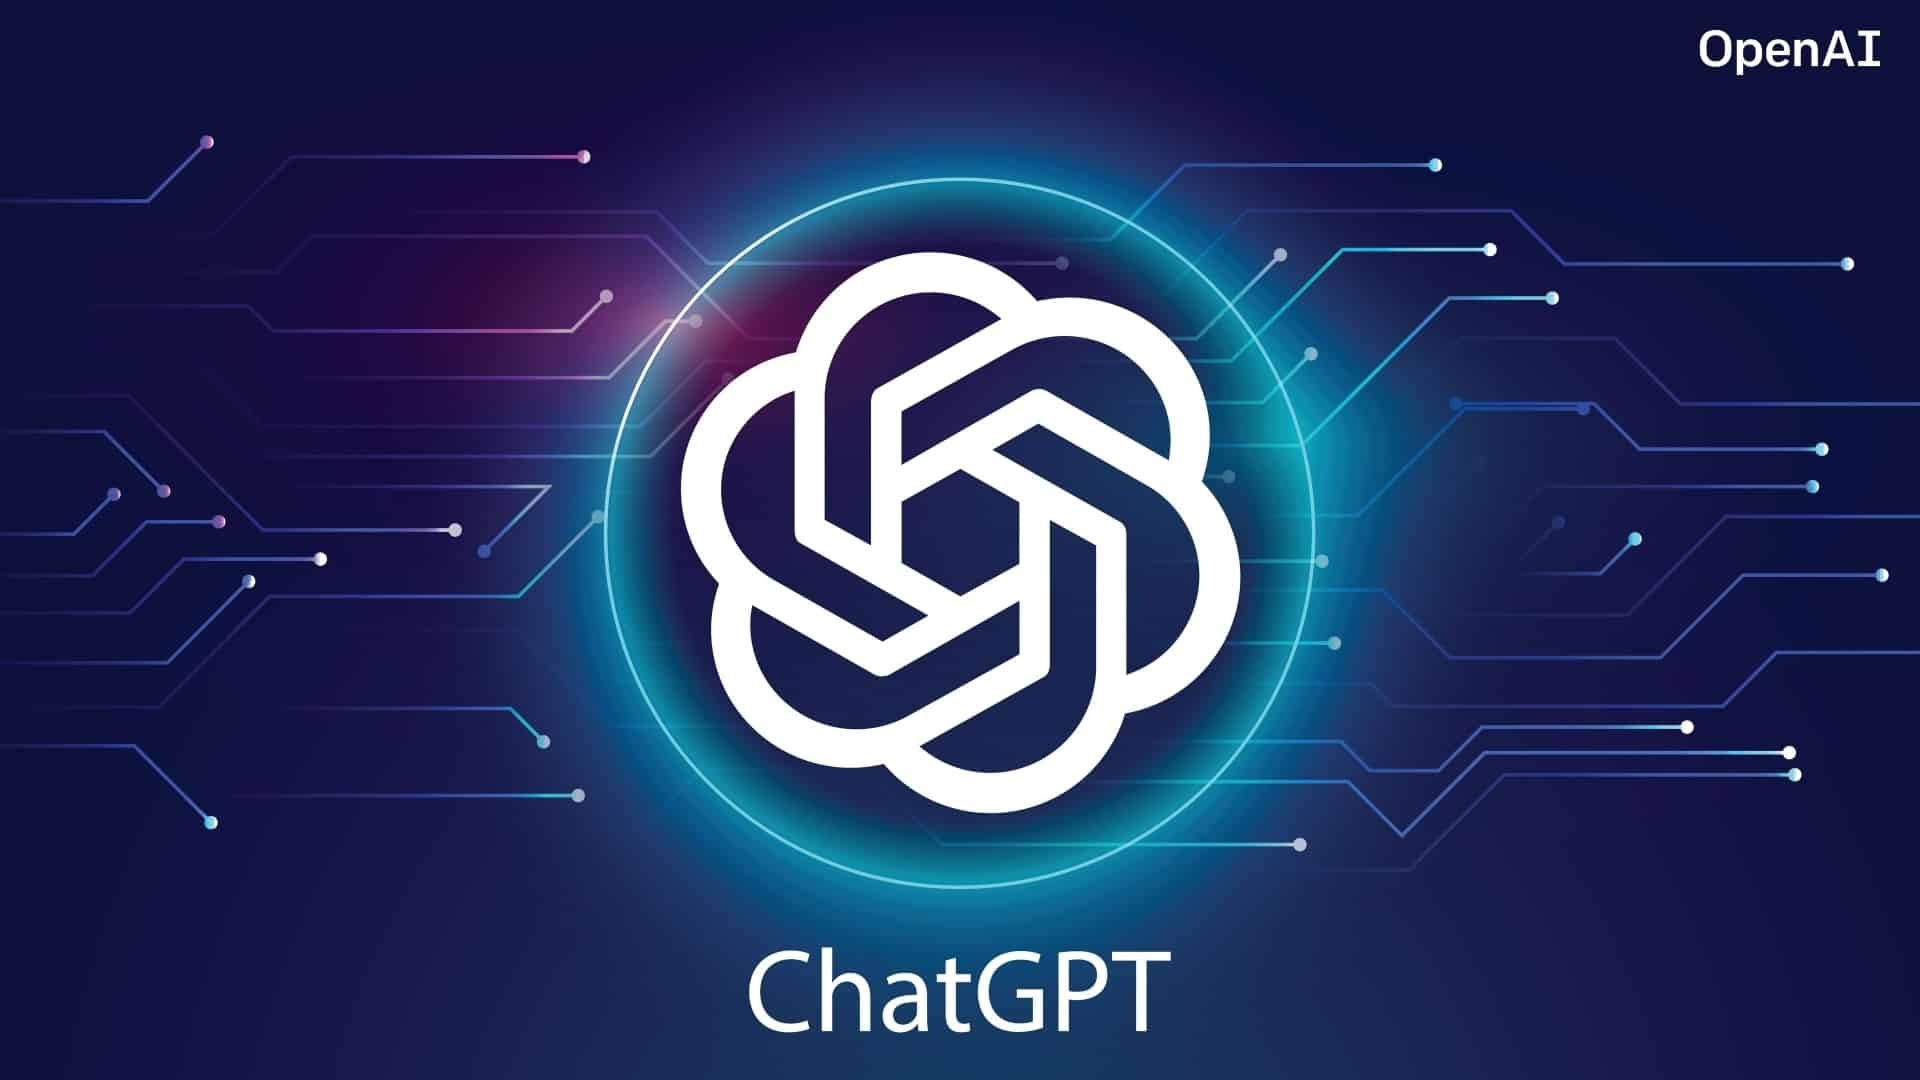 Người dùng đã có thể sử dụng ChatGPT mà không cần đăng ký tài khoản